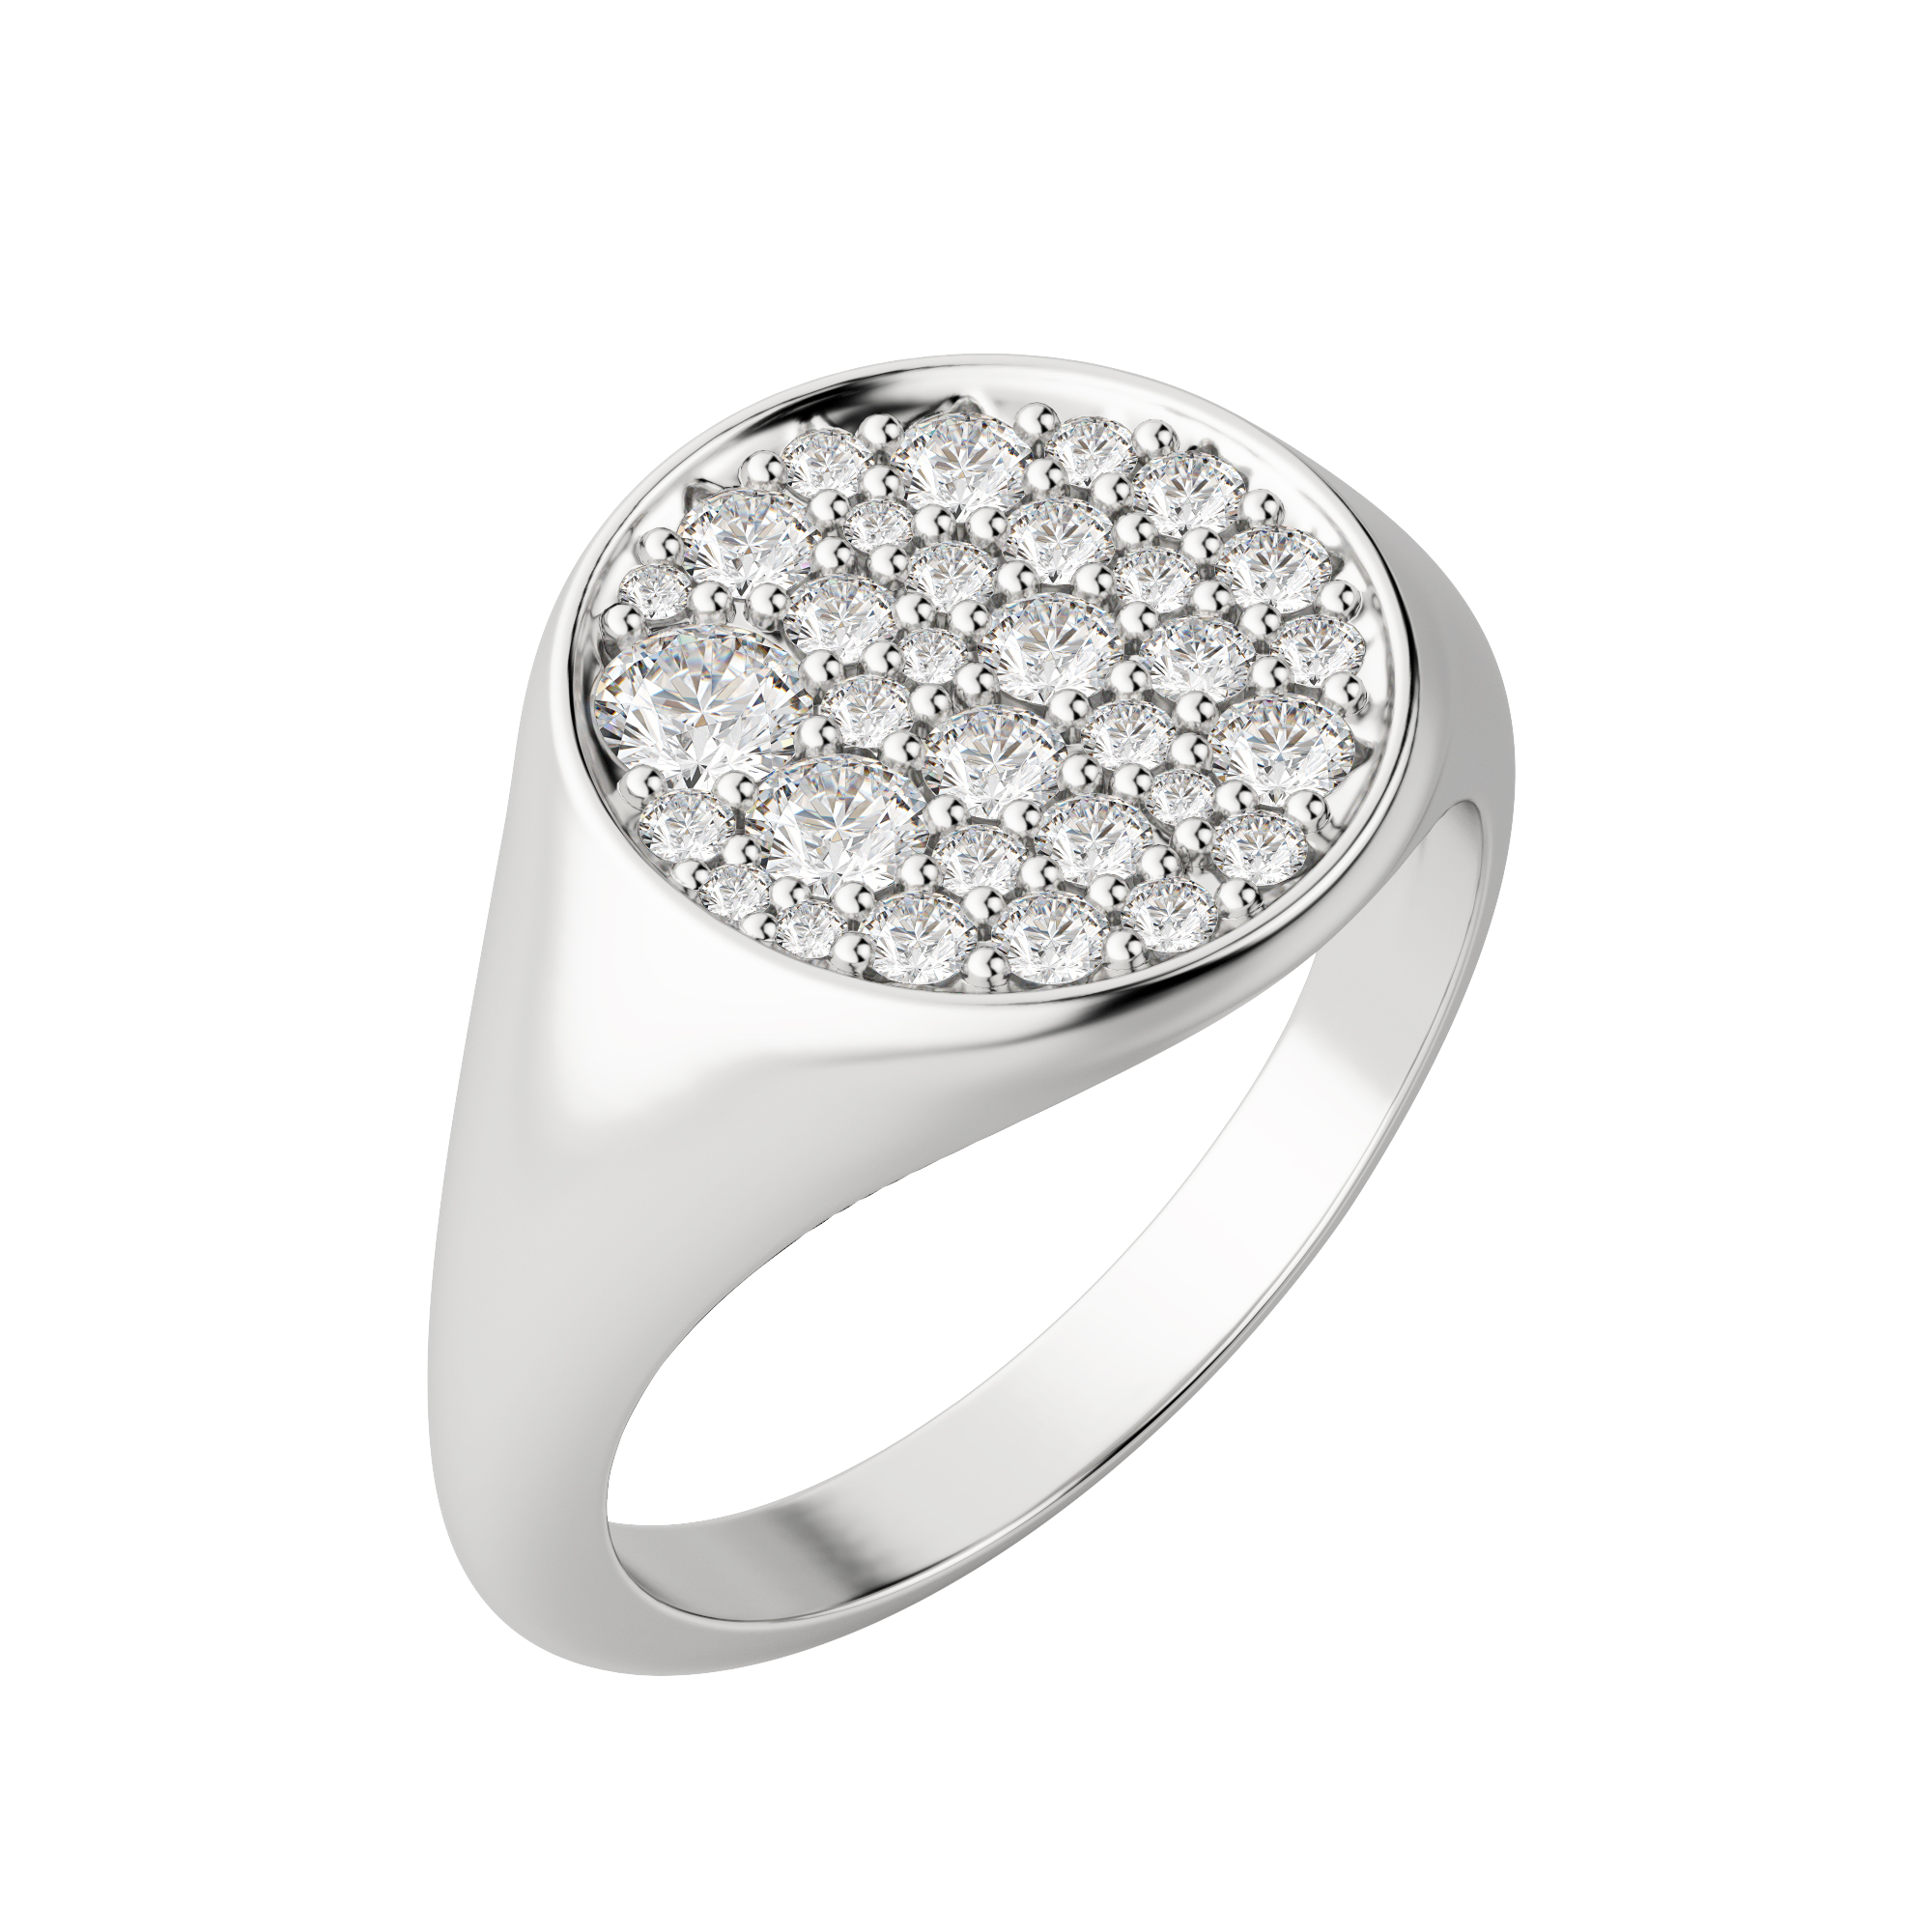 Full Moon Signet Ring, Default, 14K White Gold,